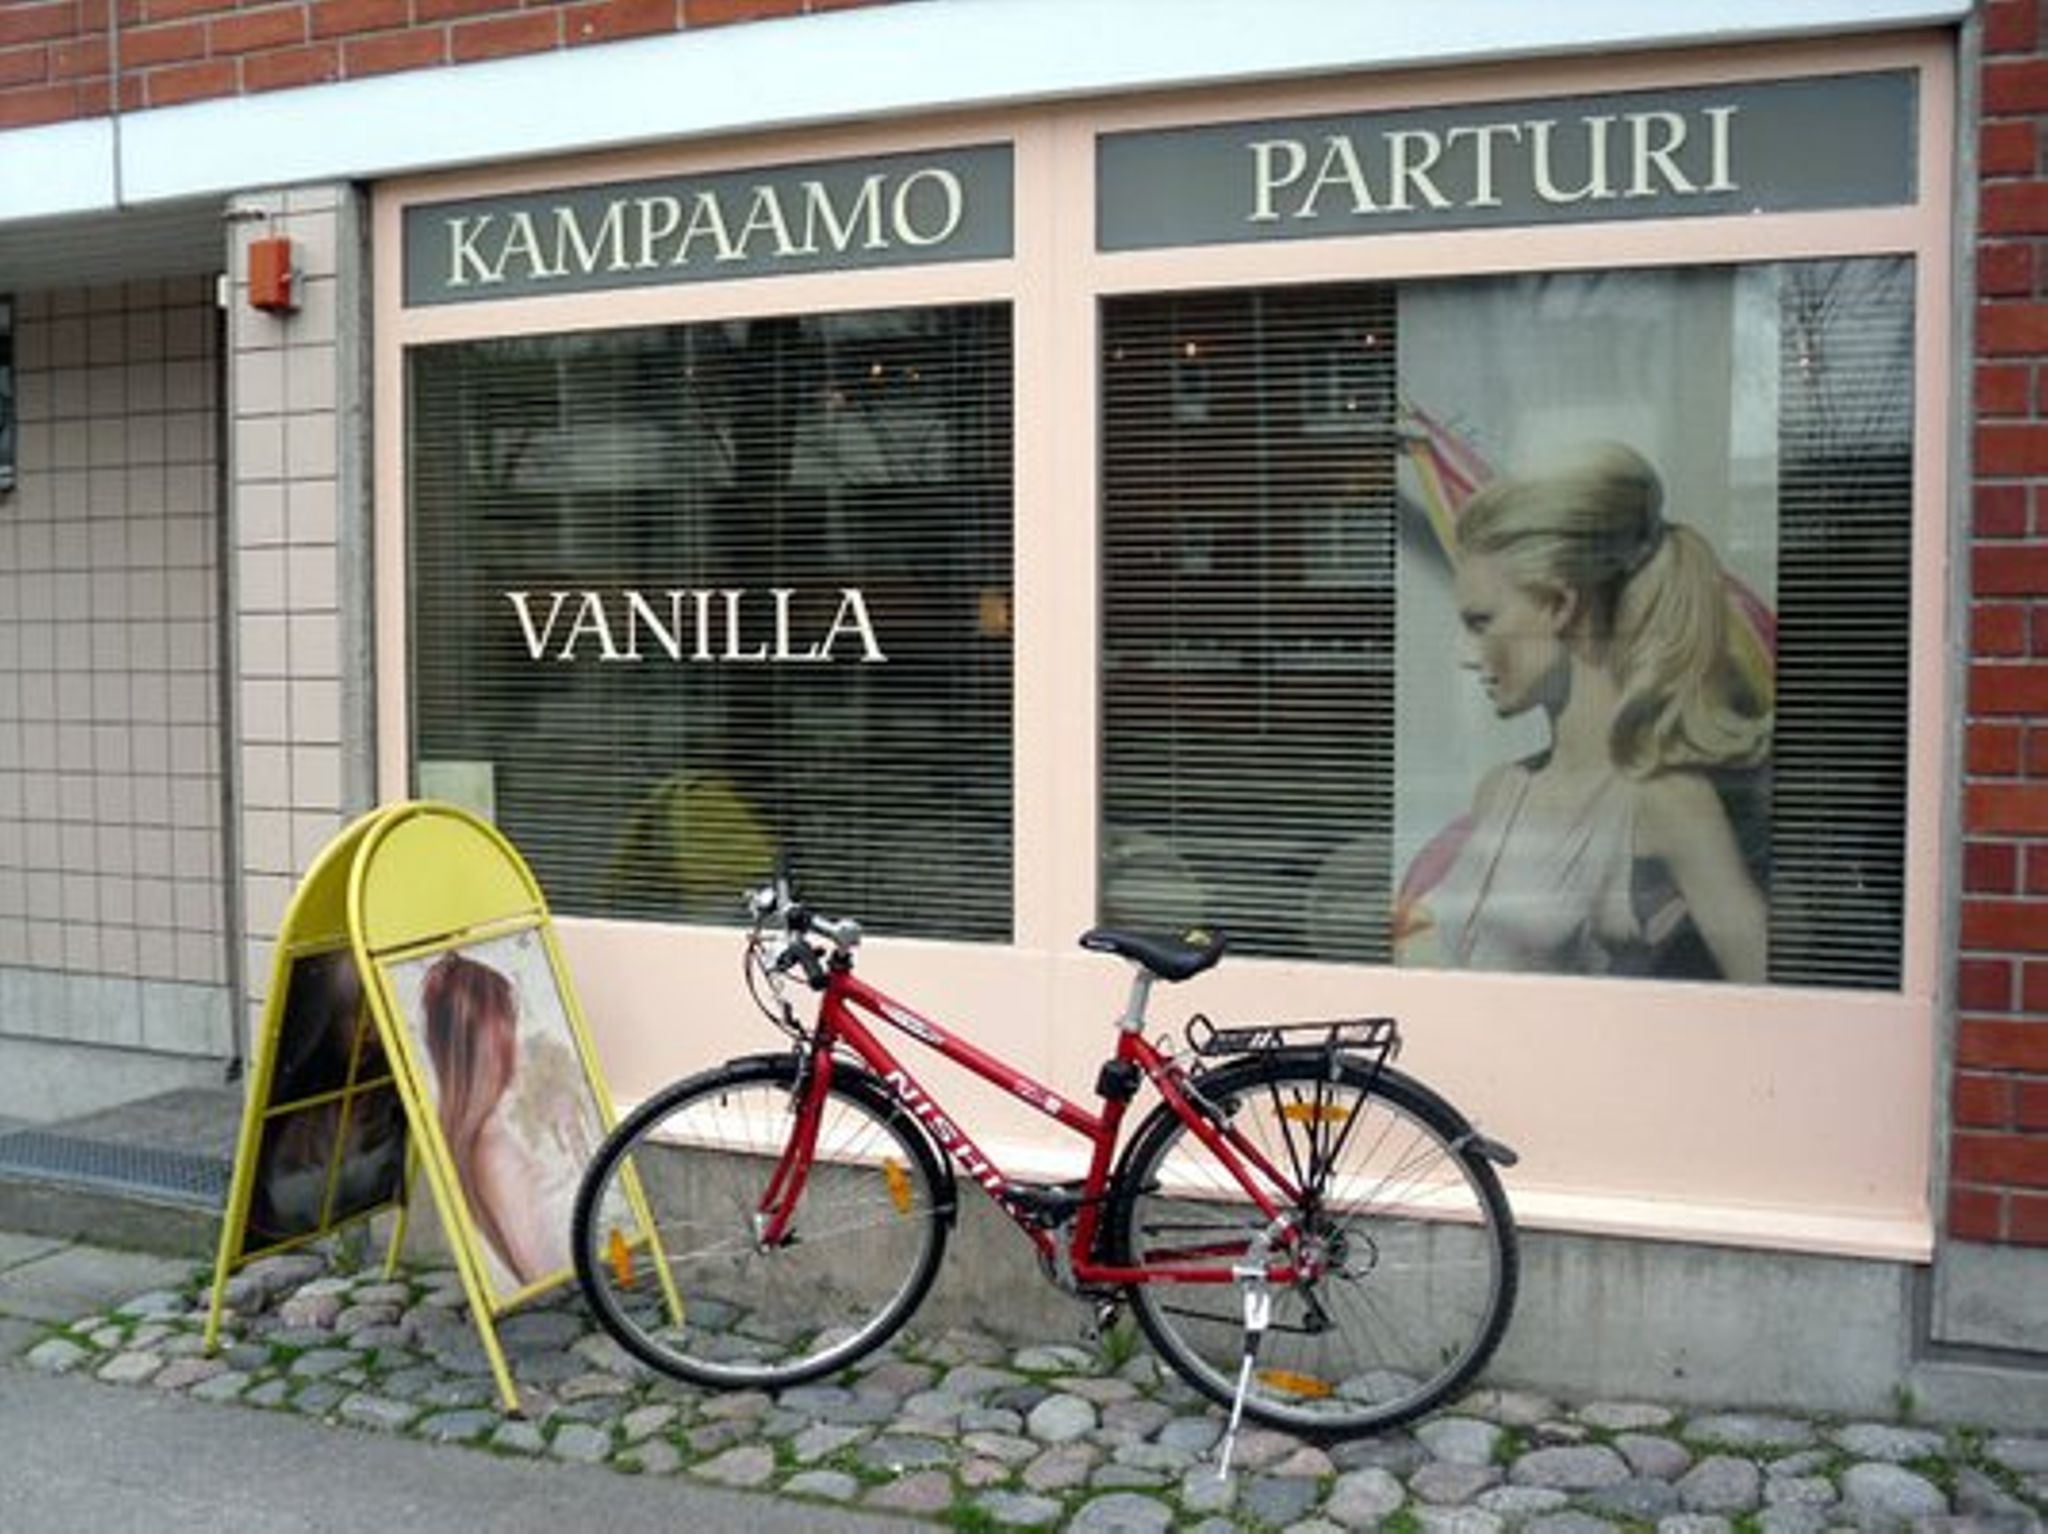 Images Parturi-Kampaamo Vanilla